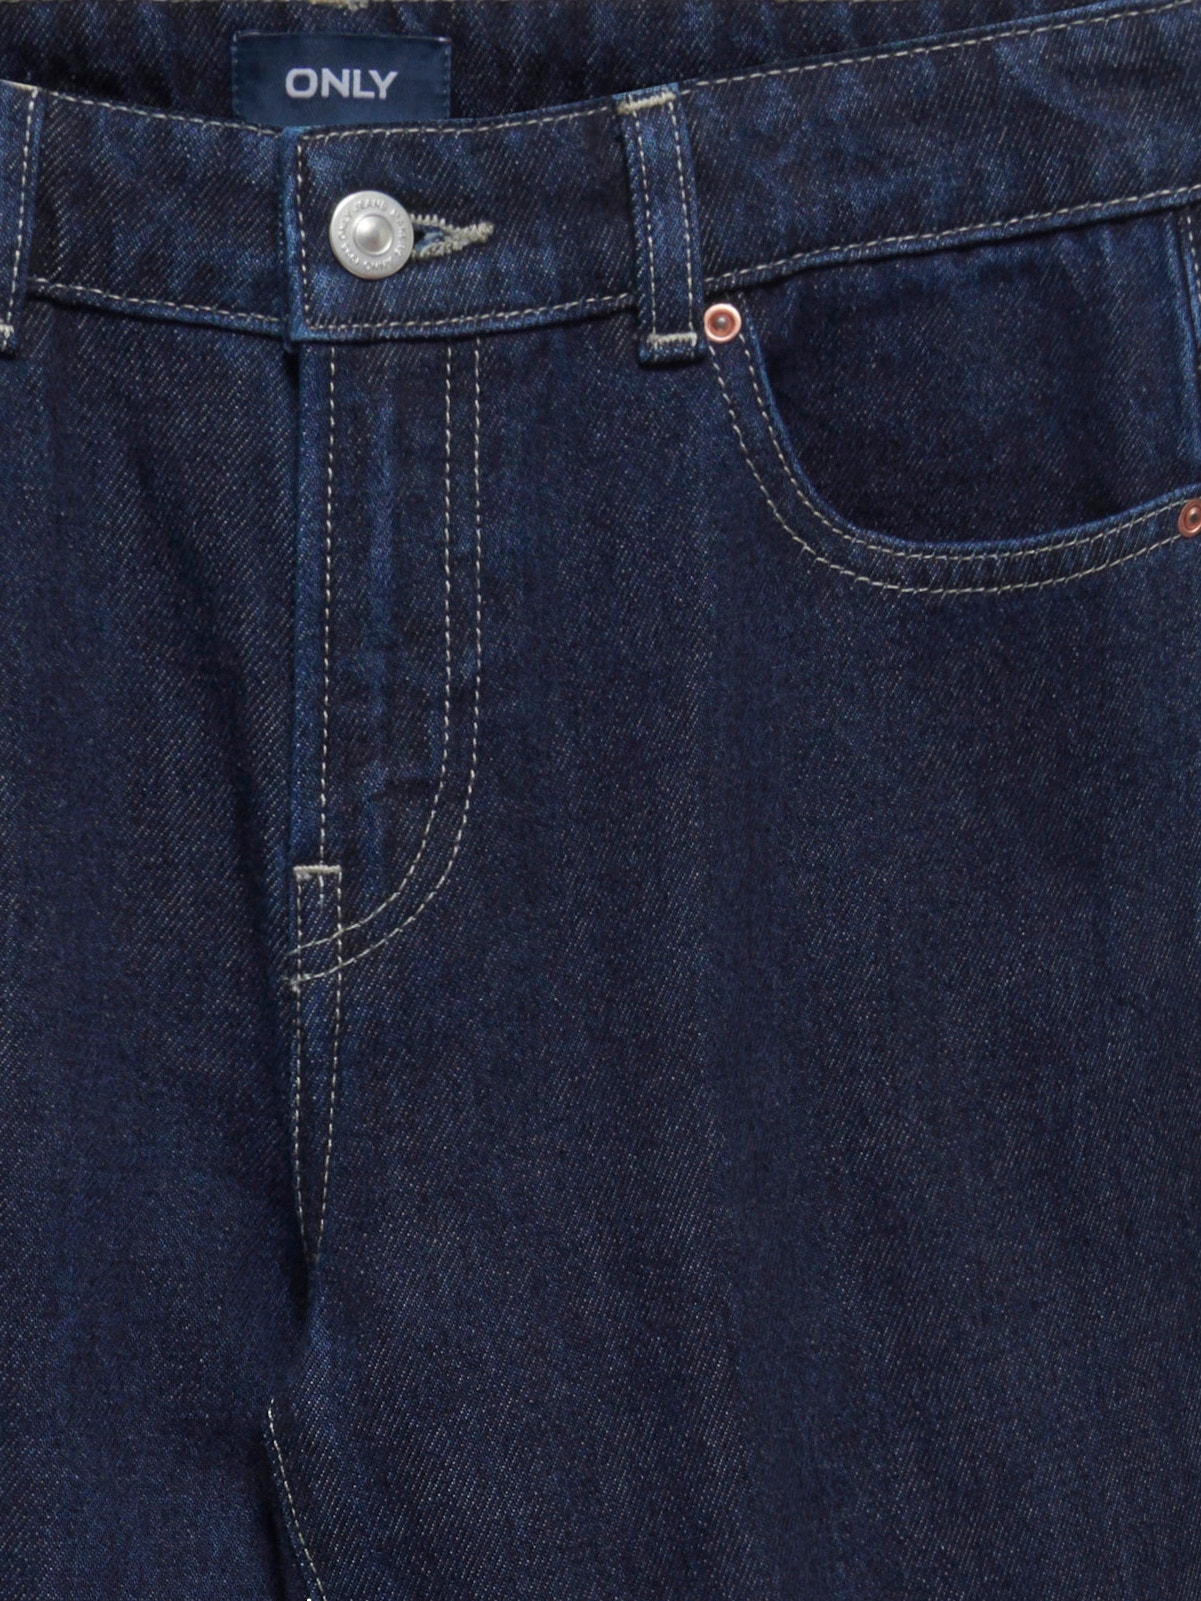 ONLY Jeans Loose Fit -Dark Blue Denim - 15297156